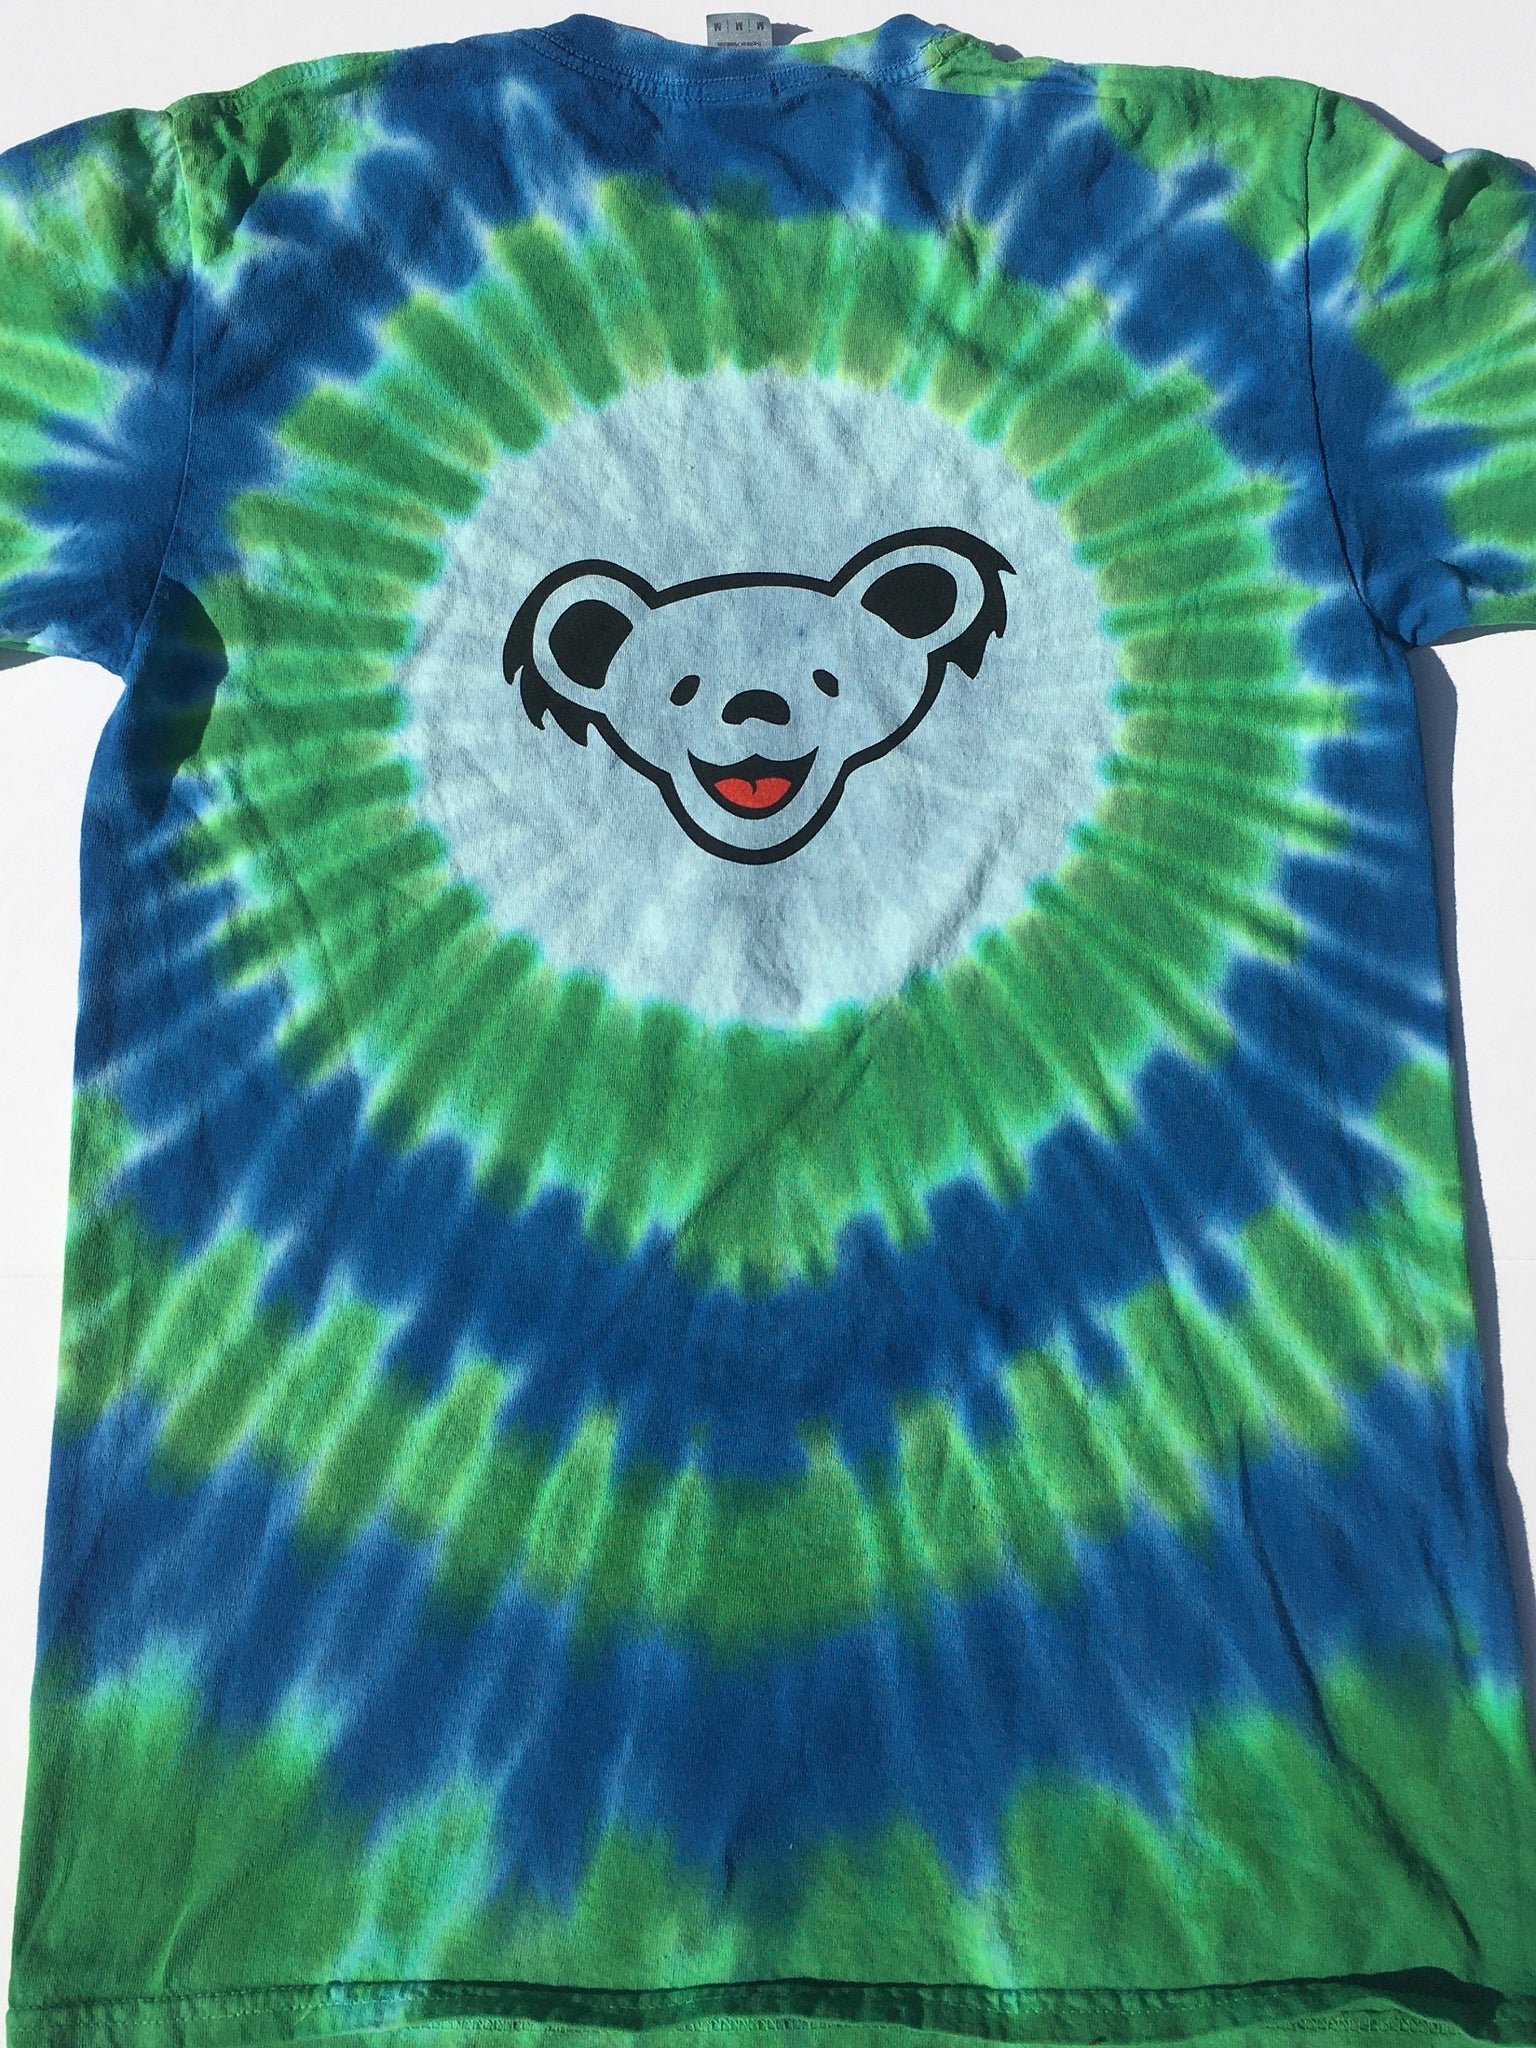 Grateful Dead: Bears Tie Dye Shirt